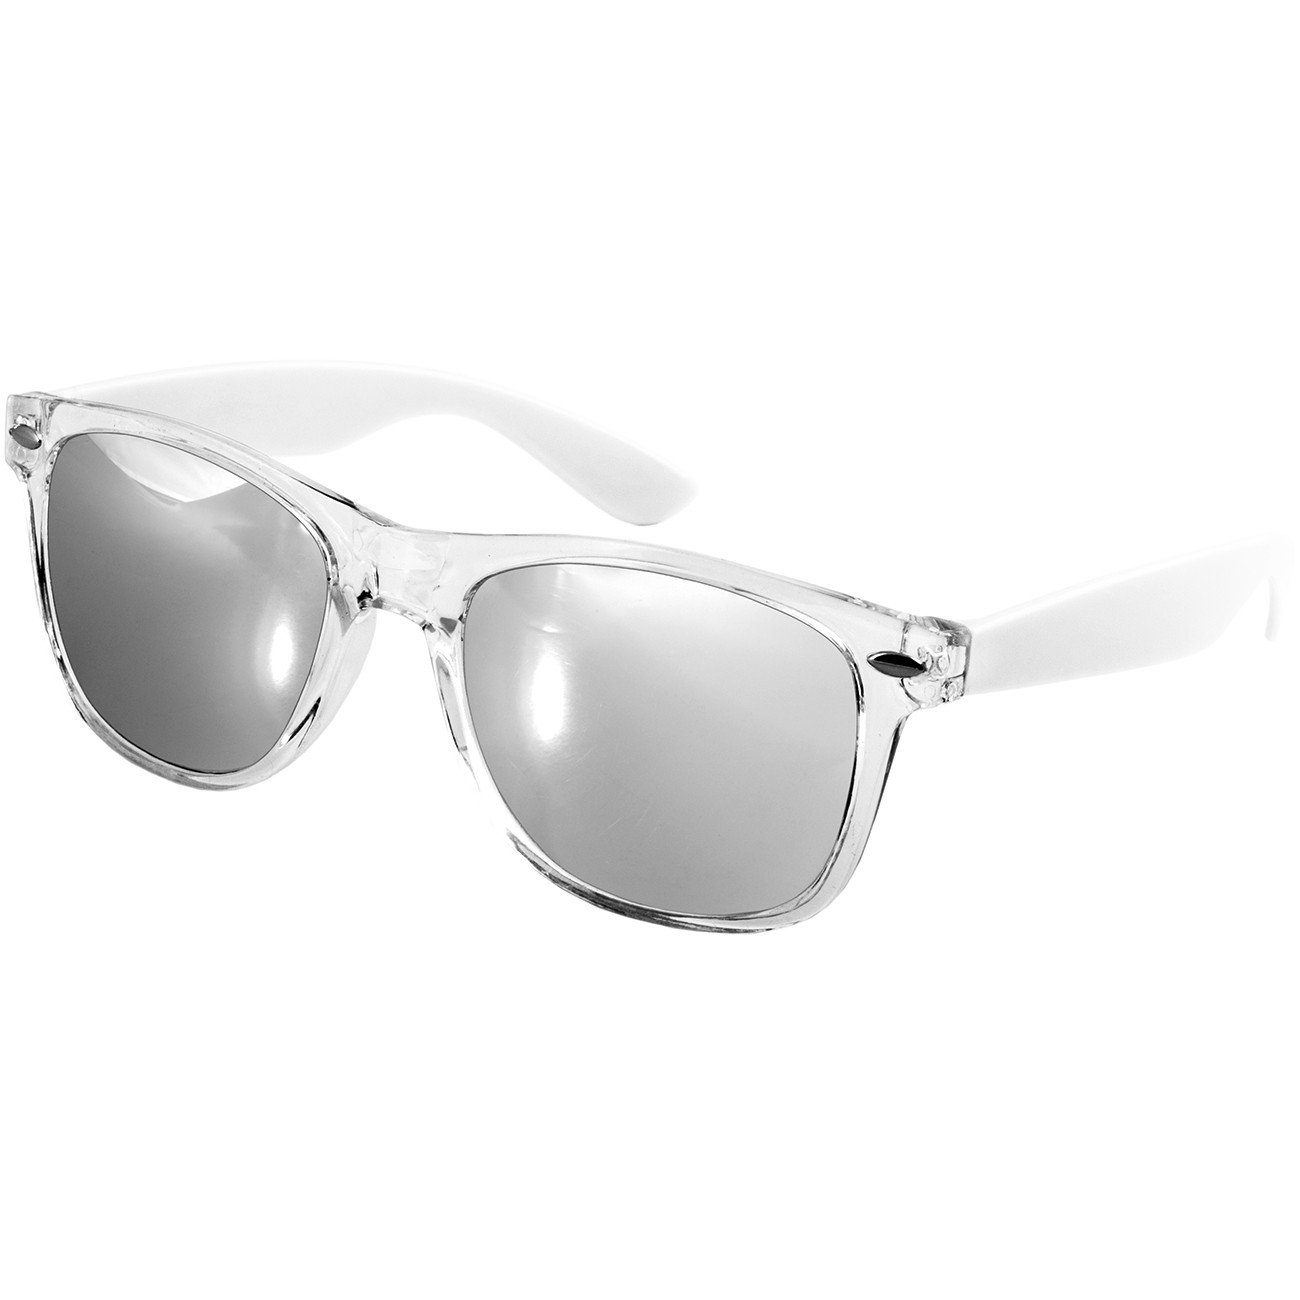 / weiß silber verspiegelt Designbrille Sonnenbrille Caspar SG017 Damen RETRO